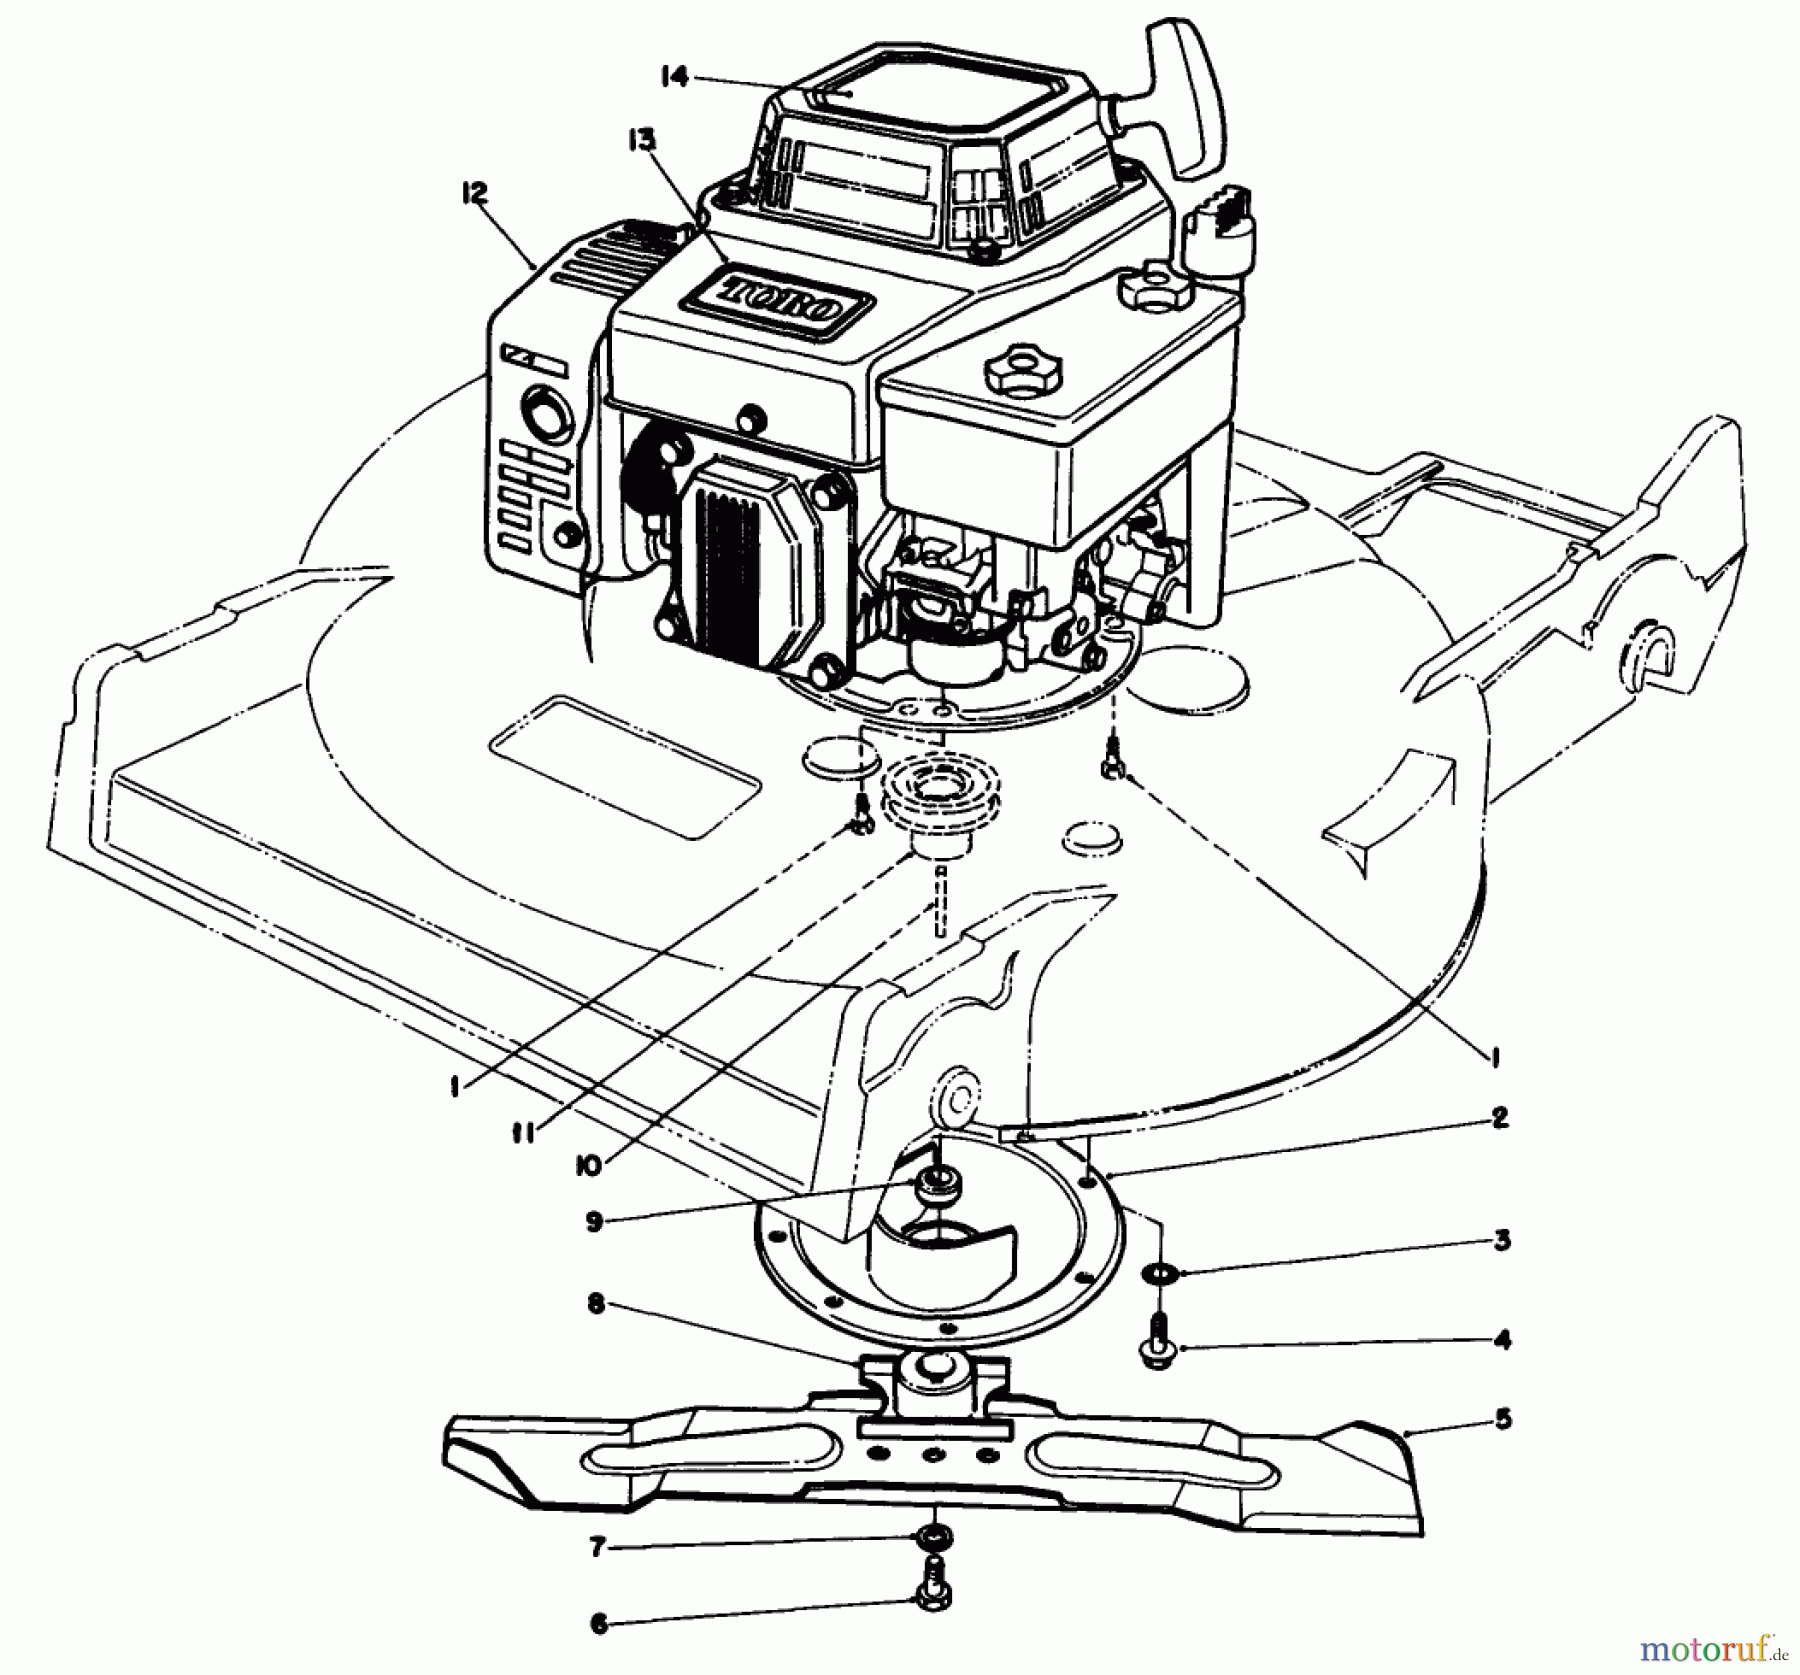  Toro Neu Mowers, Walk-Behind Seite 2 22621 - Toro Lawnmower, 1988 (8000001-8999999) ENGINE ASSEMBLY